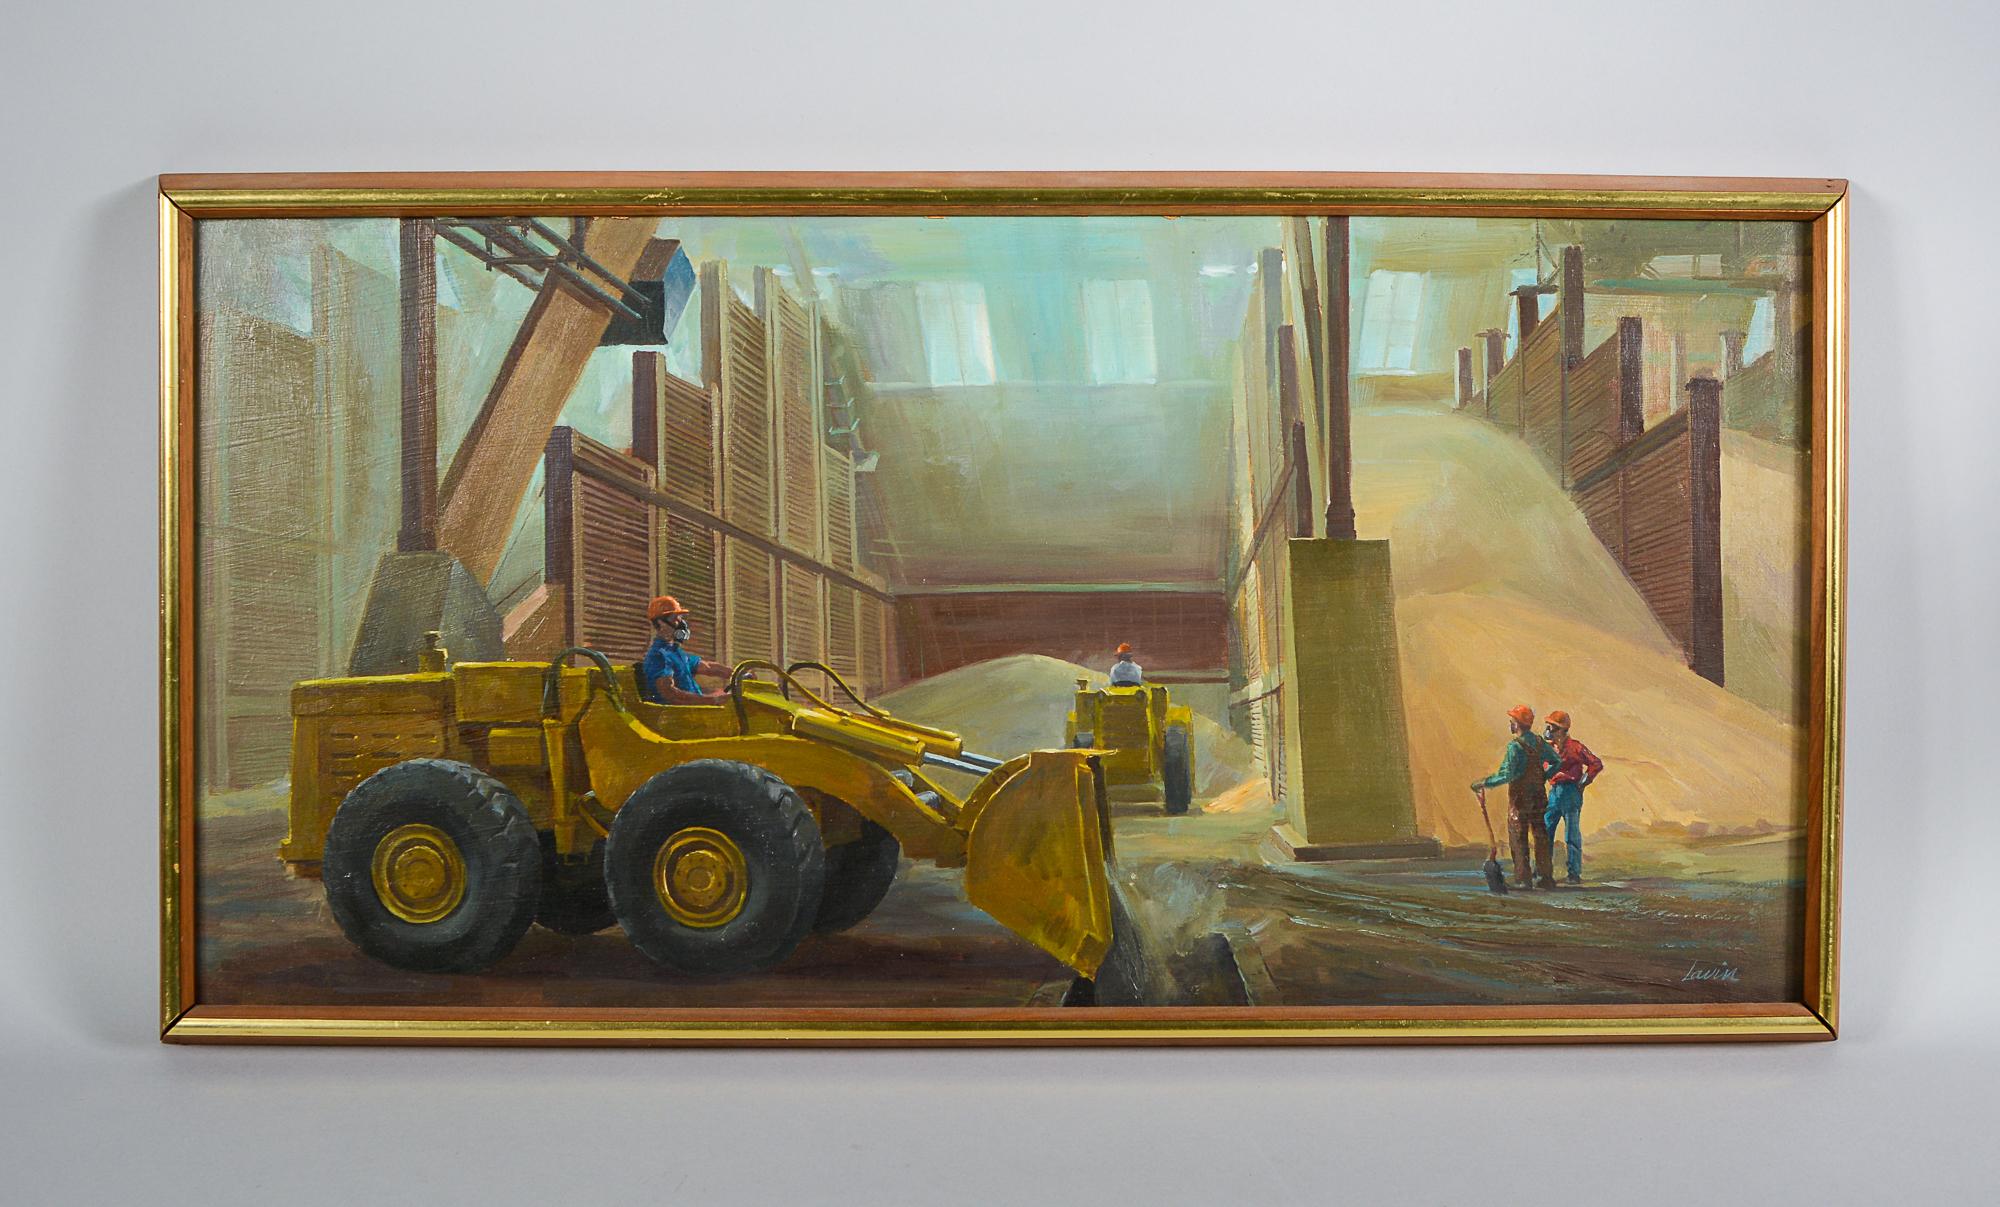 Ölgemälde auf Masonit, das das Innere eines Getreidespeichers zeigt, von Robert Lavin.

Robert Lavin (1919-1997) Geboren in New York City, besuchte er die National Academy of Art, wo er Malerei studierte. Er malte im Stil des amerikanischen